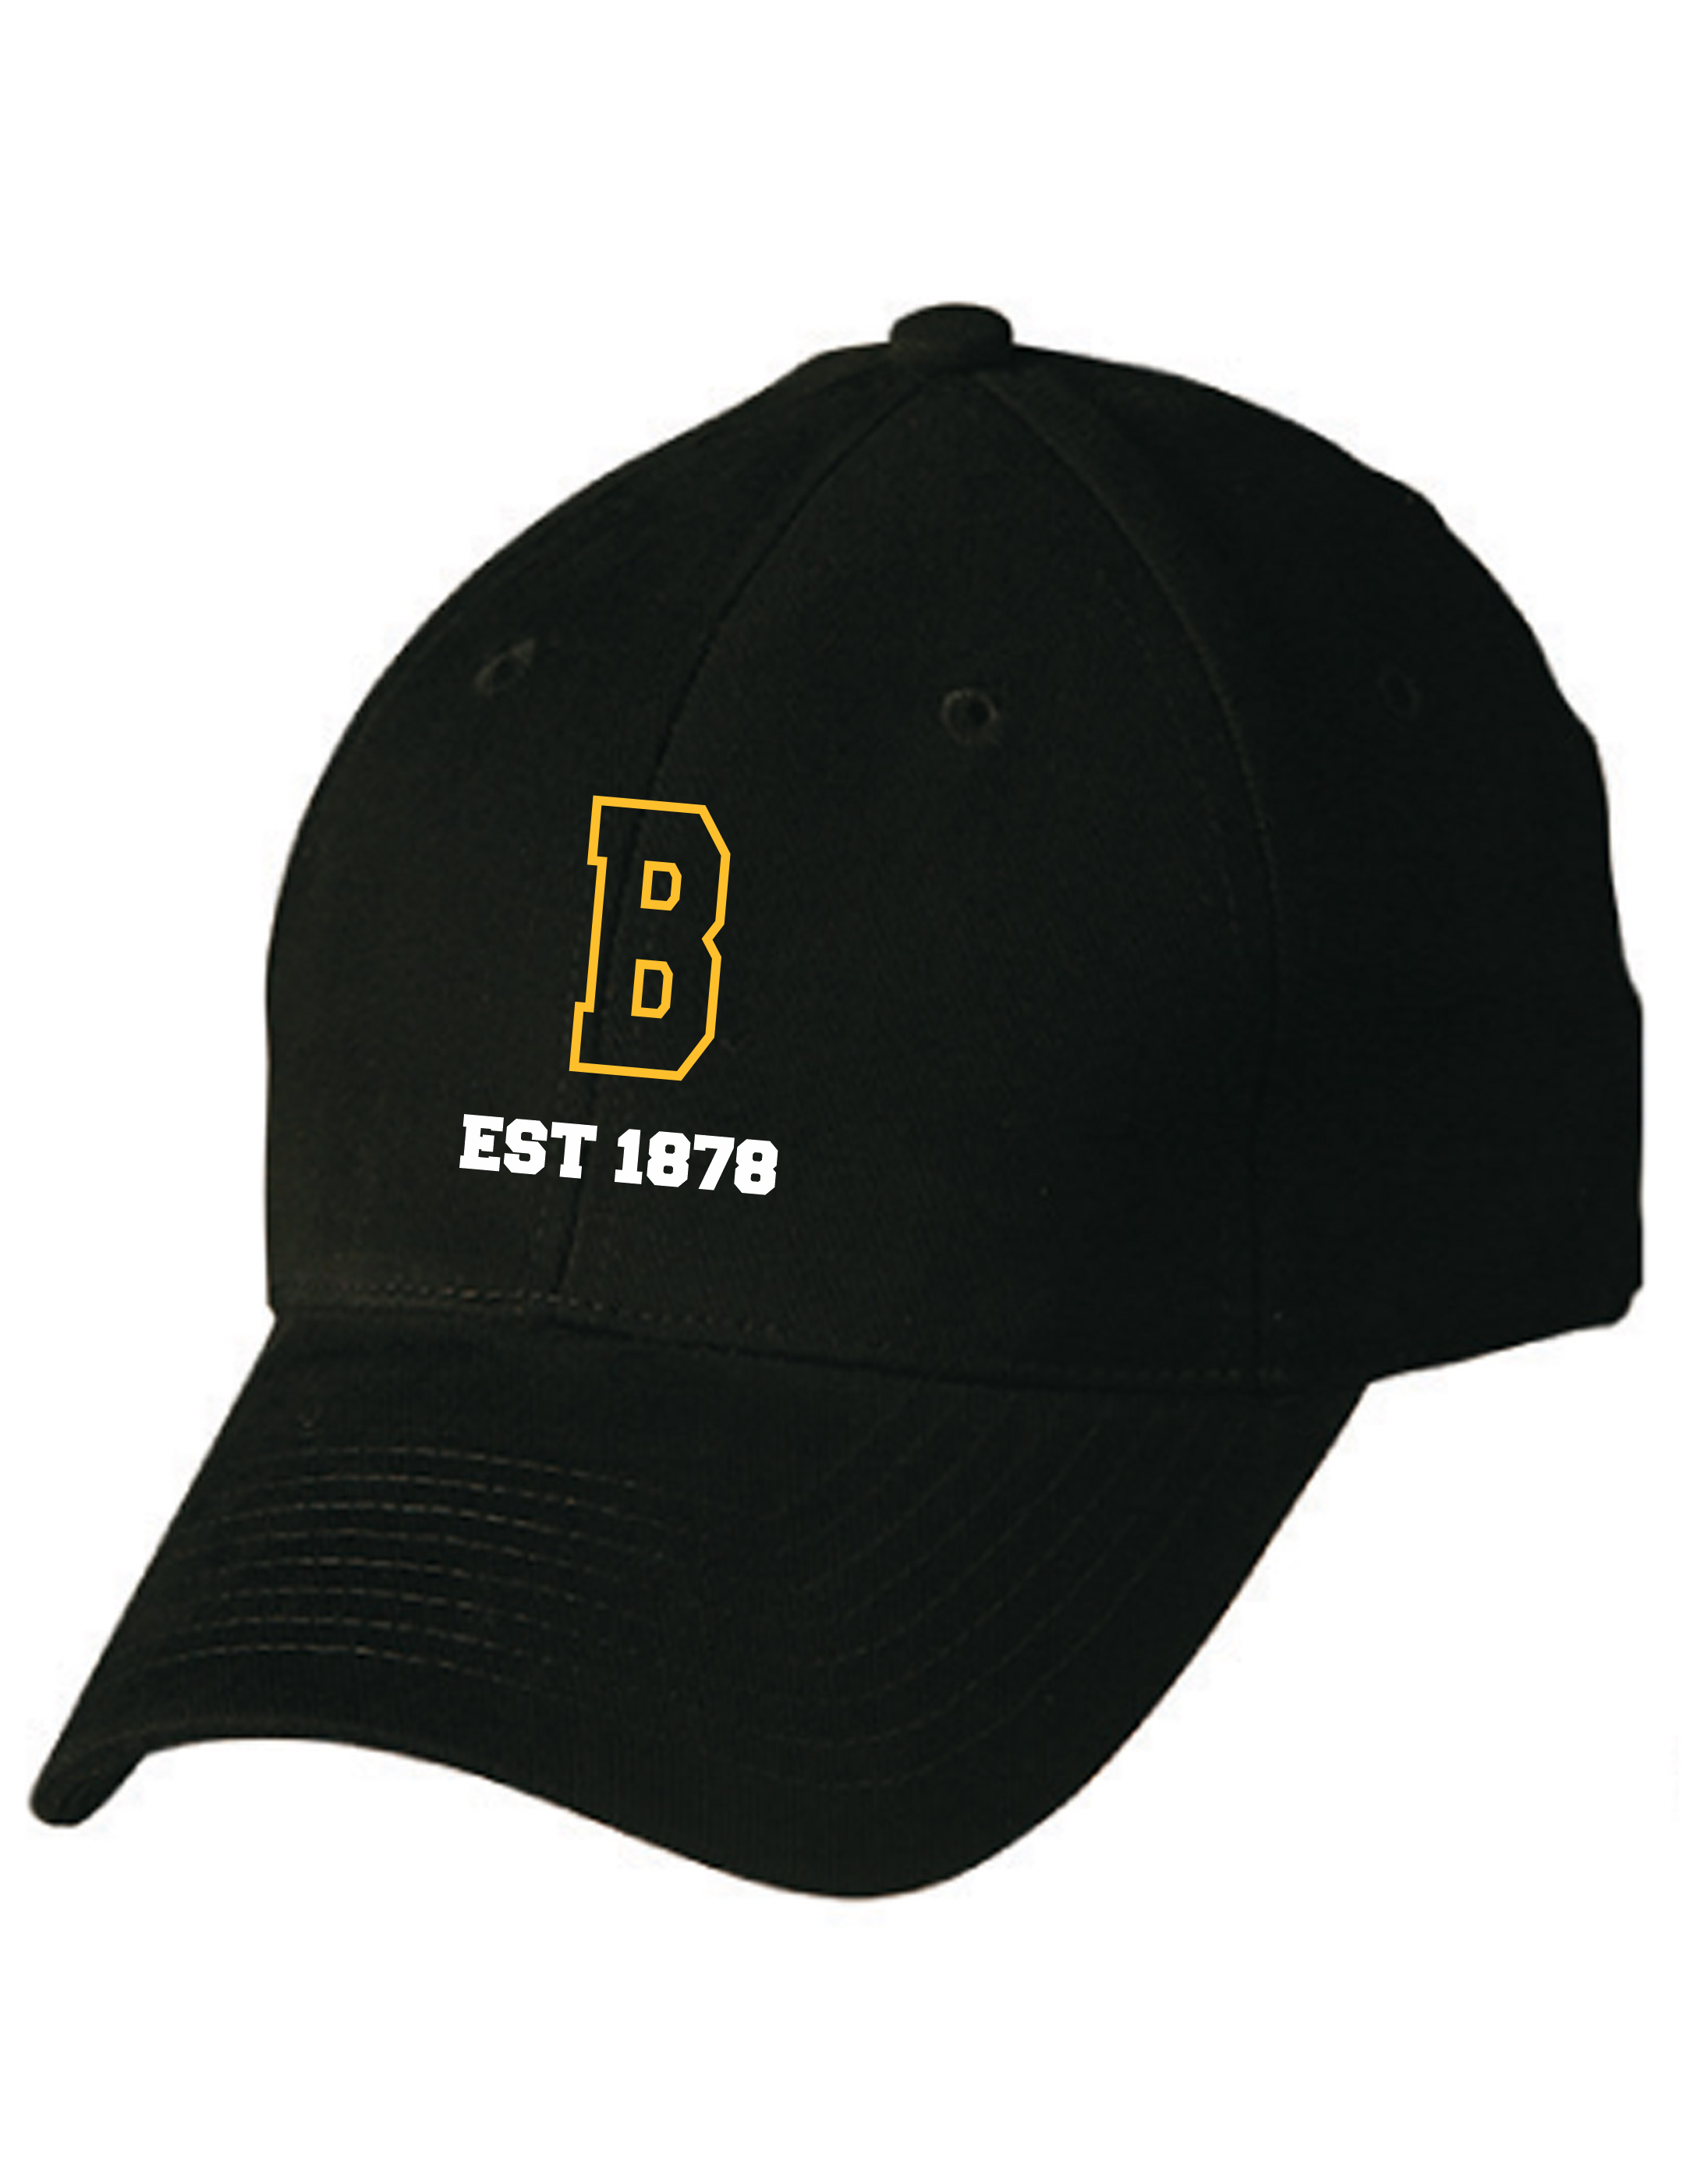 Club Cap – Black with B Logo